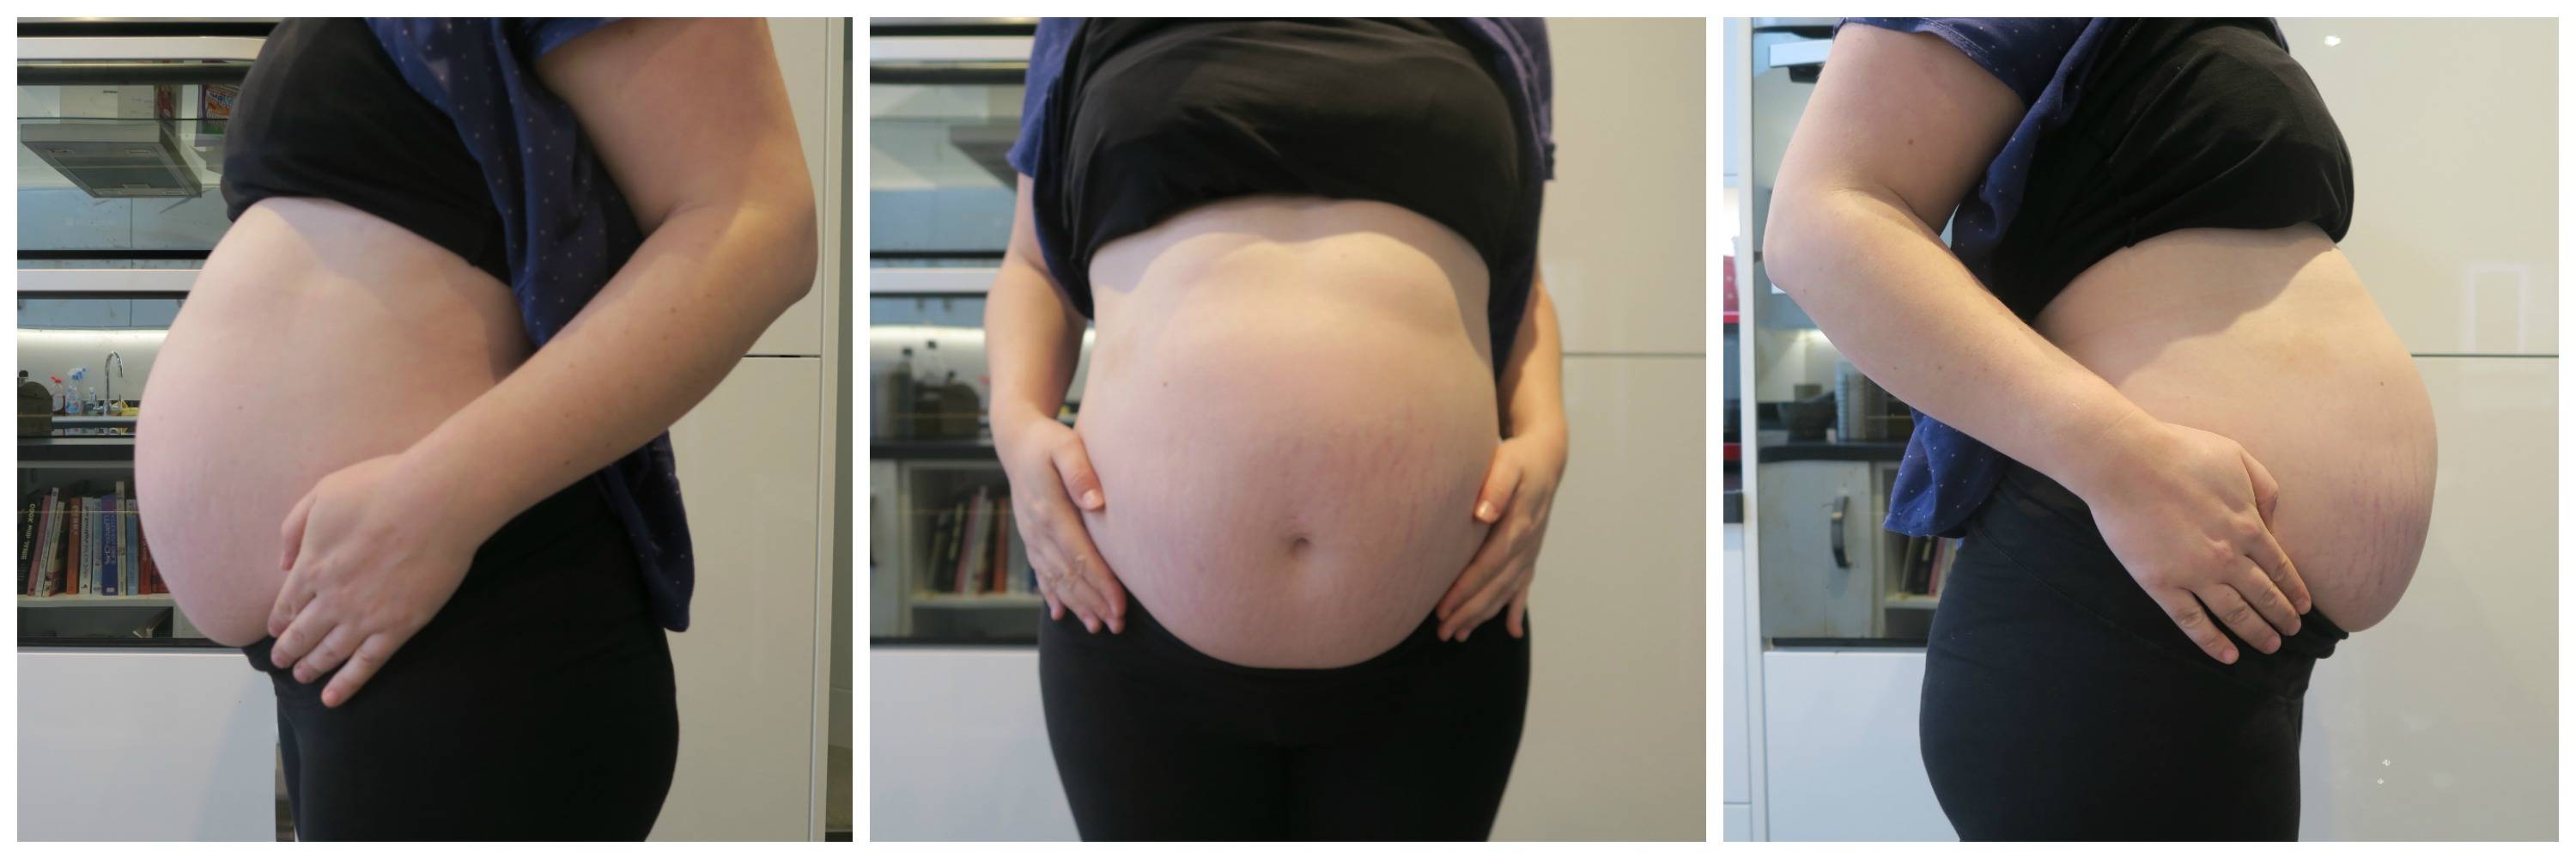 32 неделя беременности шевелится. Живот на 31 неделе беременности. Живот беременной на 31 неделе. Ребенок толкается в животе. Живот на 30 неделе беременности.